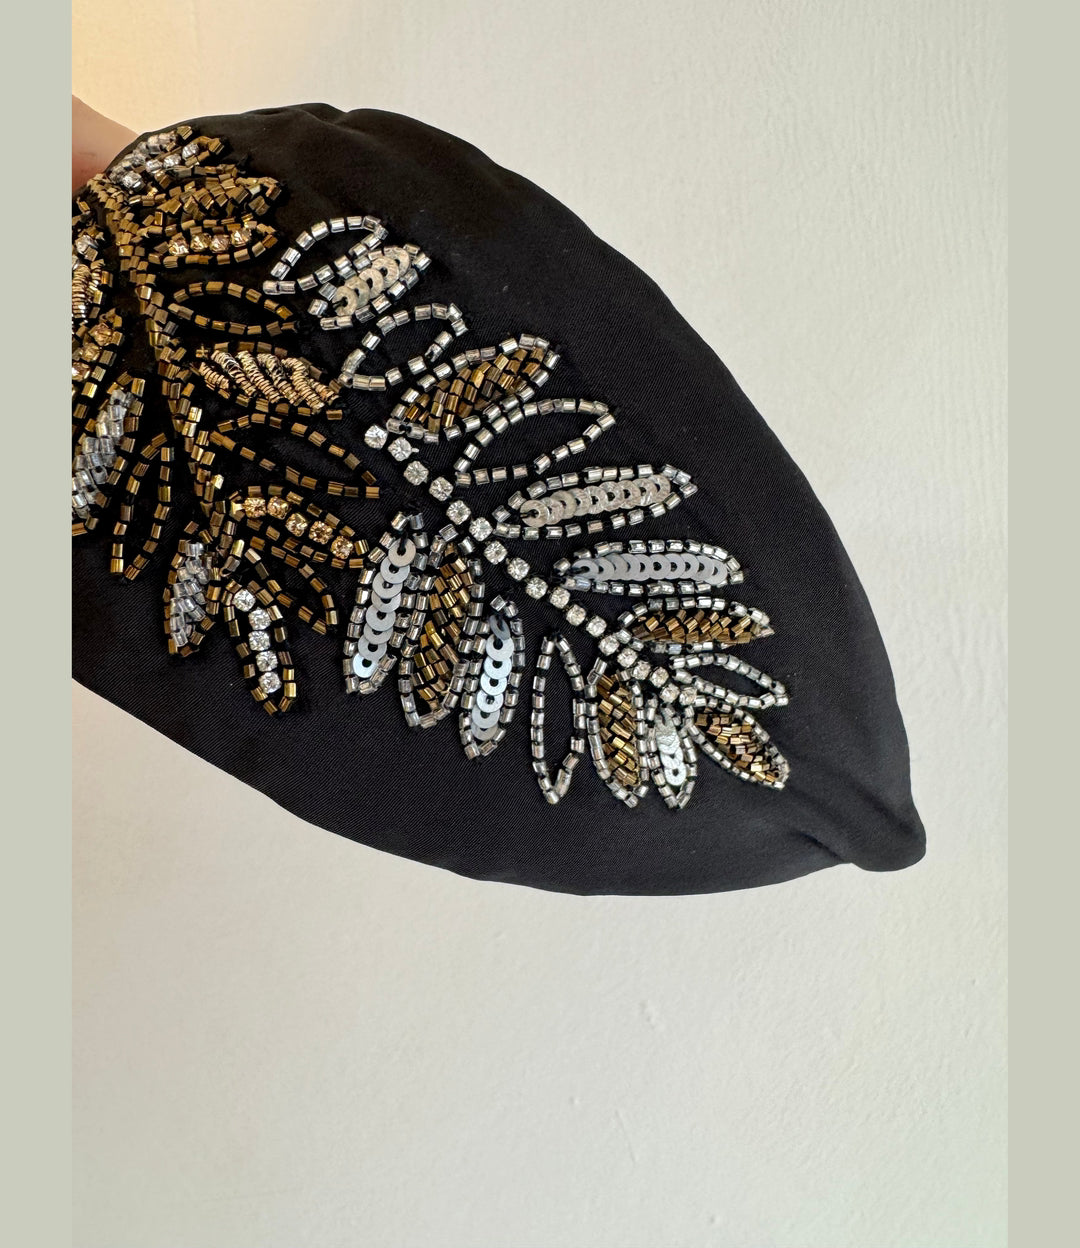 Embroidered Headband - Metallic Leaf